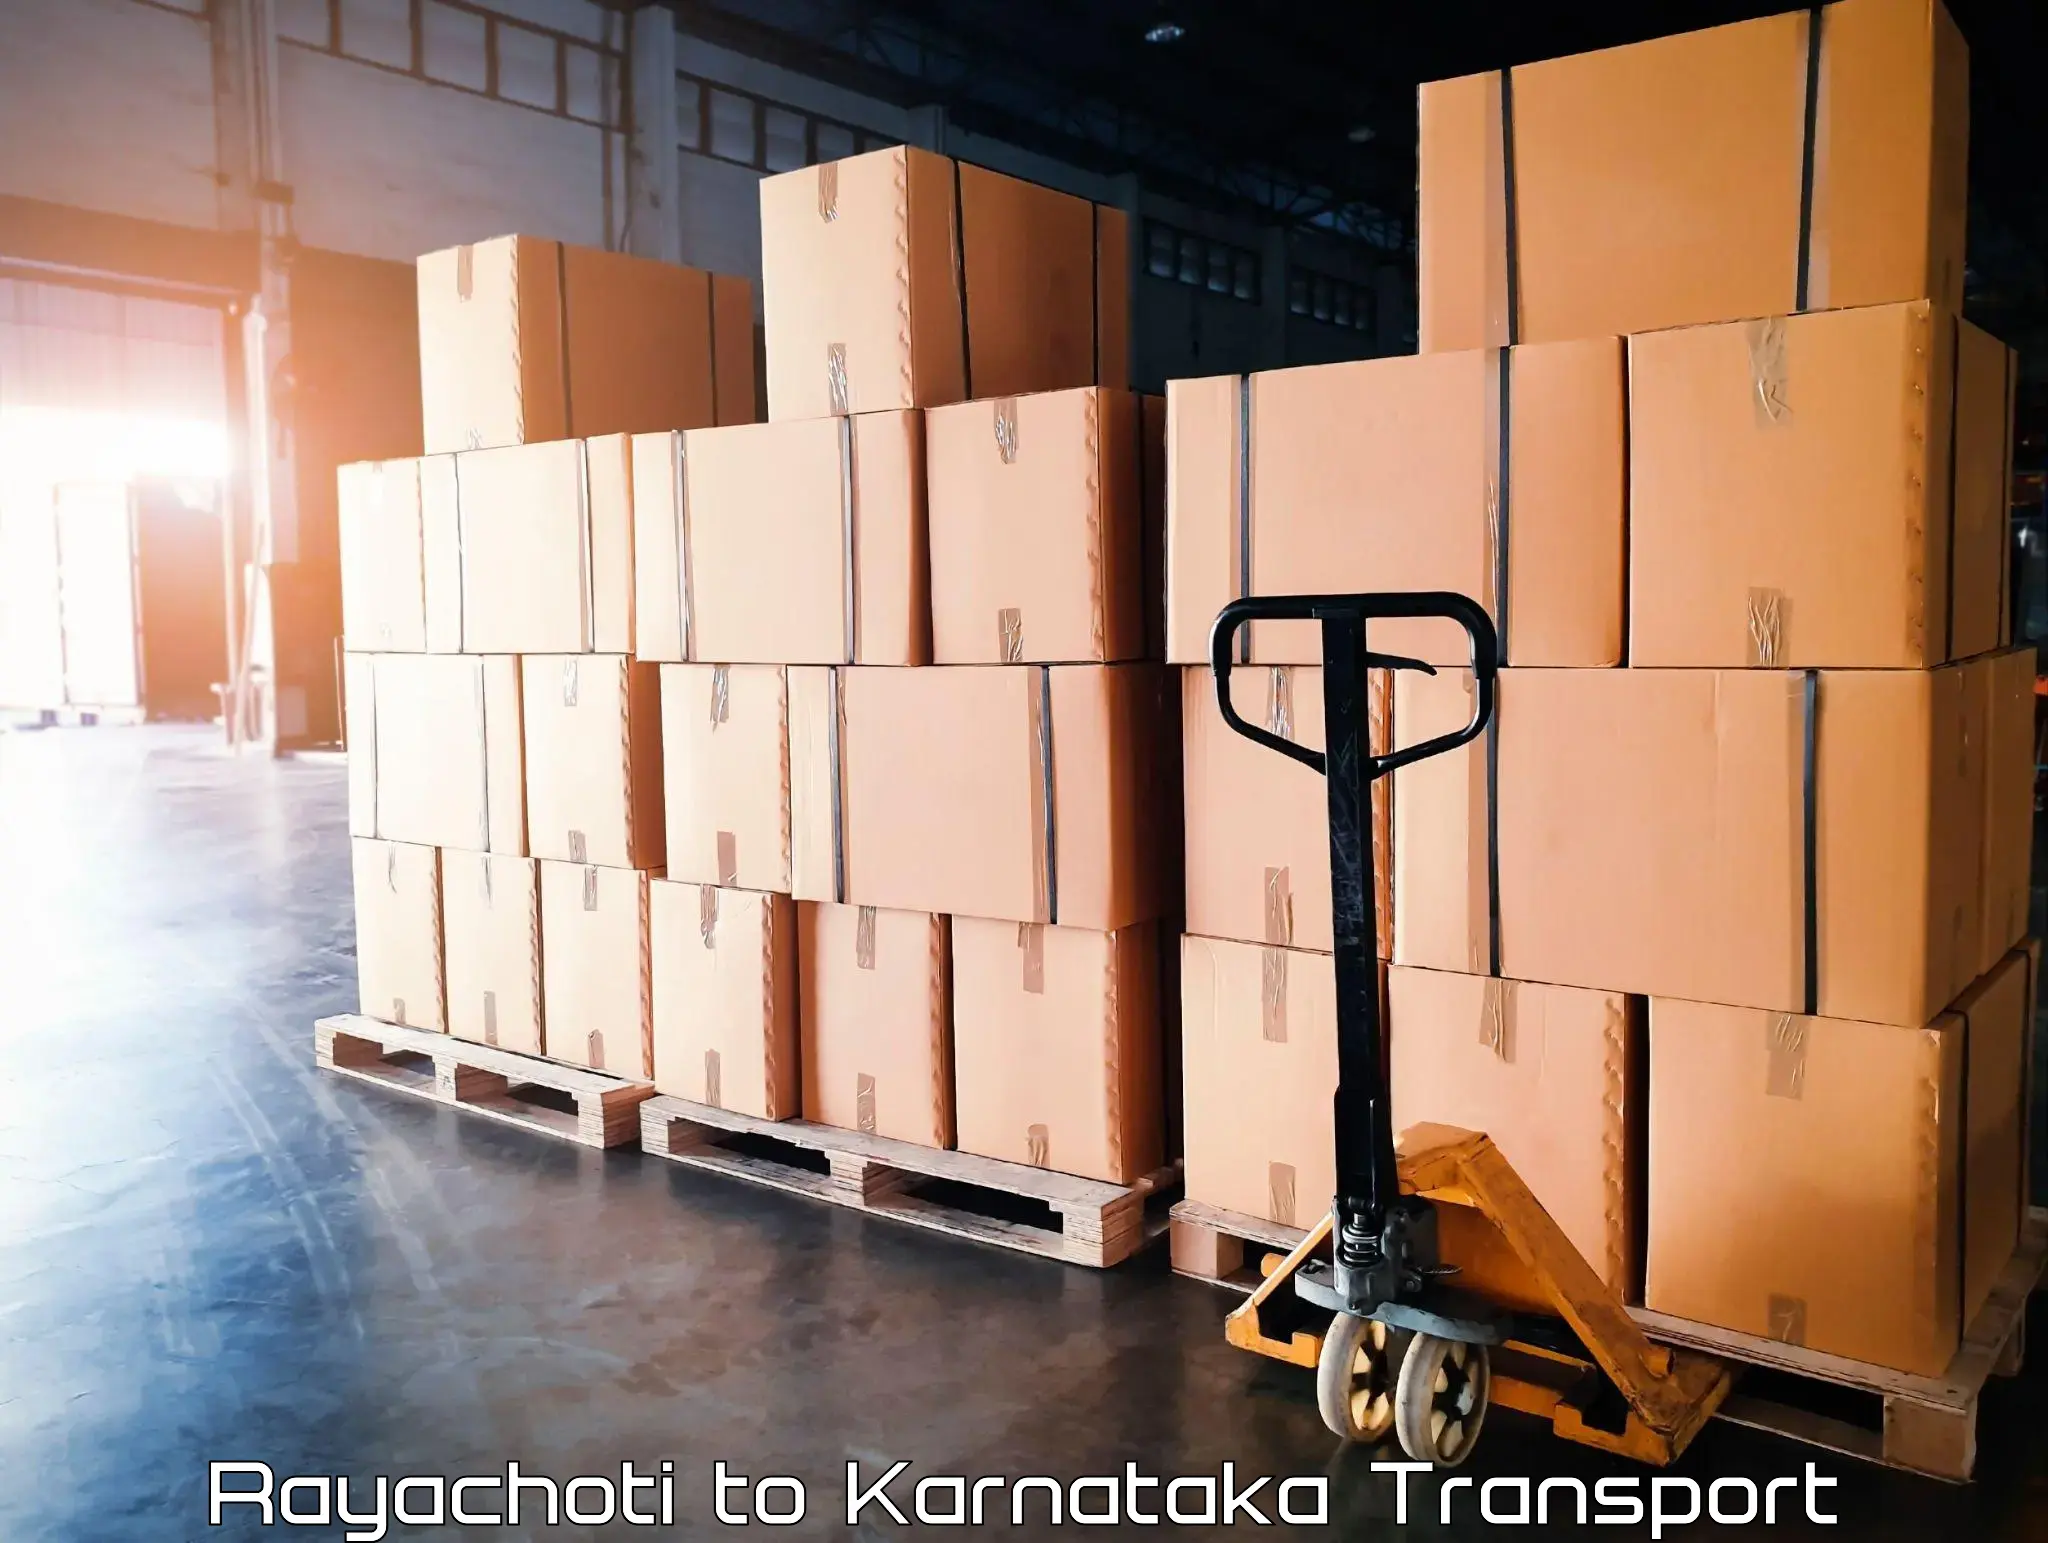 Transport in sharing Rayachoti to Bangarapet